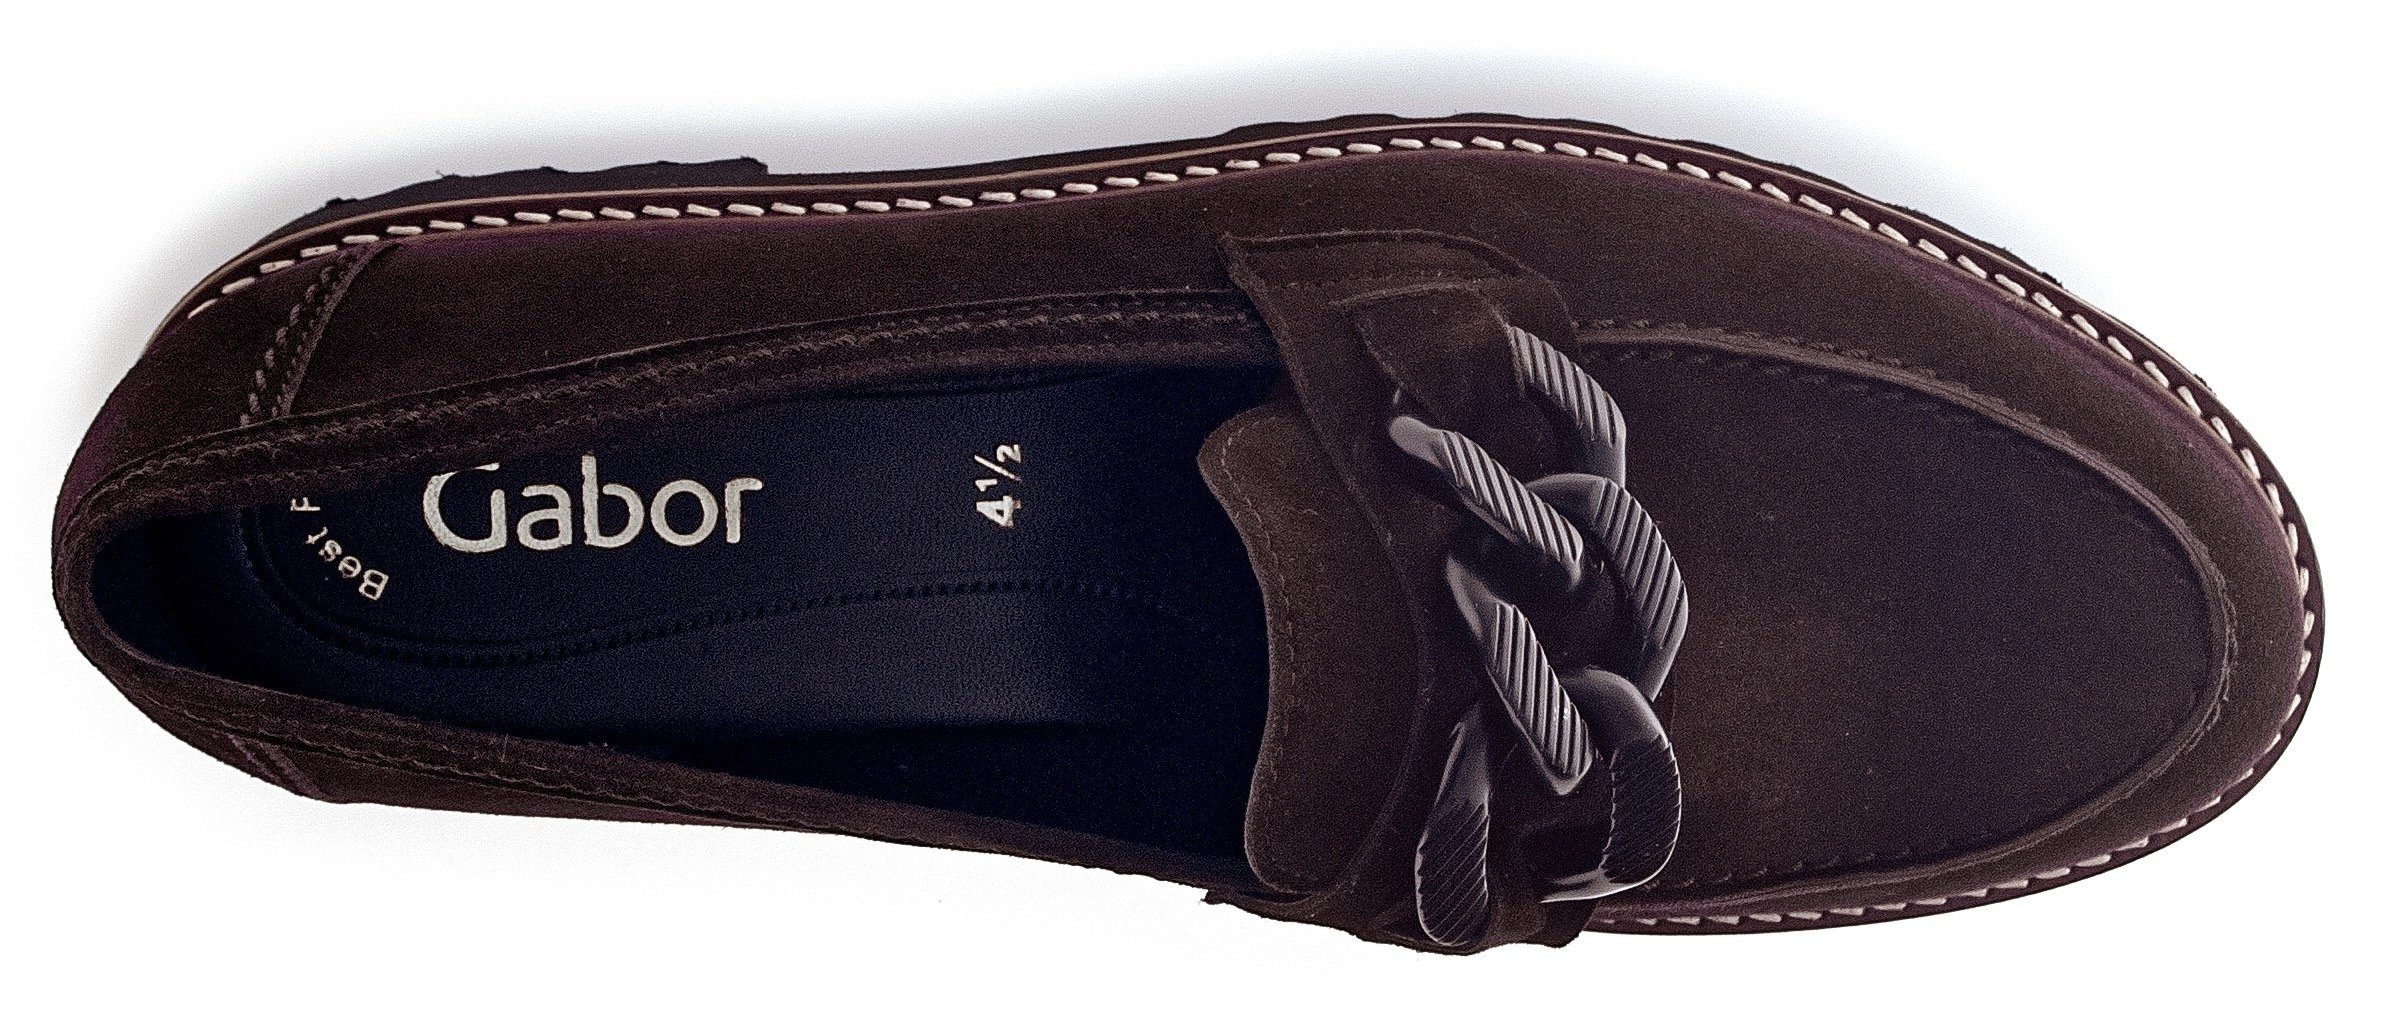 Gabor Slipper Fitting-Ausstattung mit dunkelbraun-schwarz Best